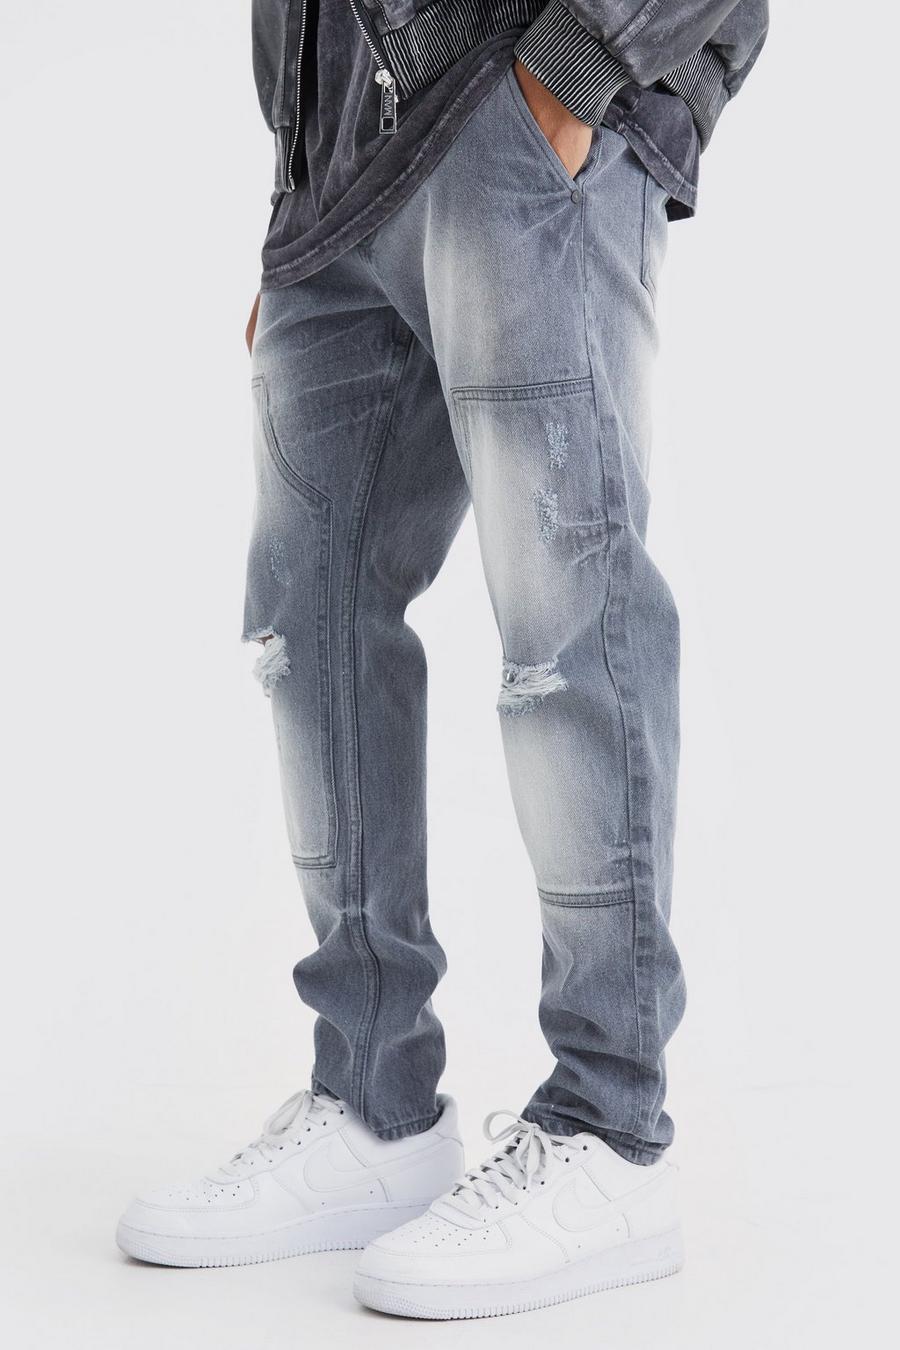 Jeans Slim Fit in denim rigido stile Carpenter con strappi, Light grey